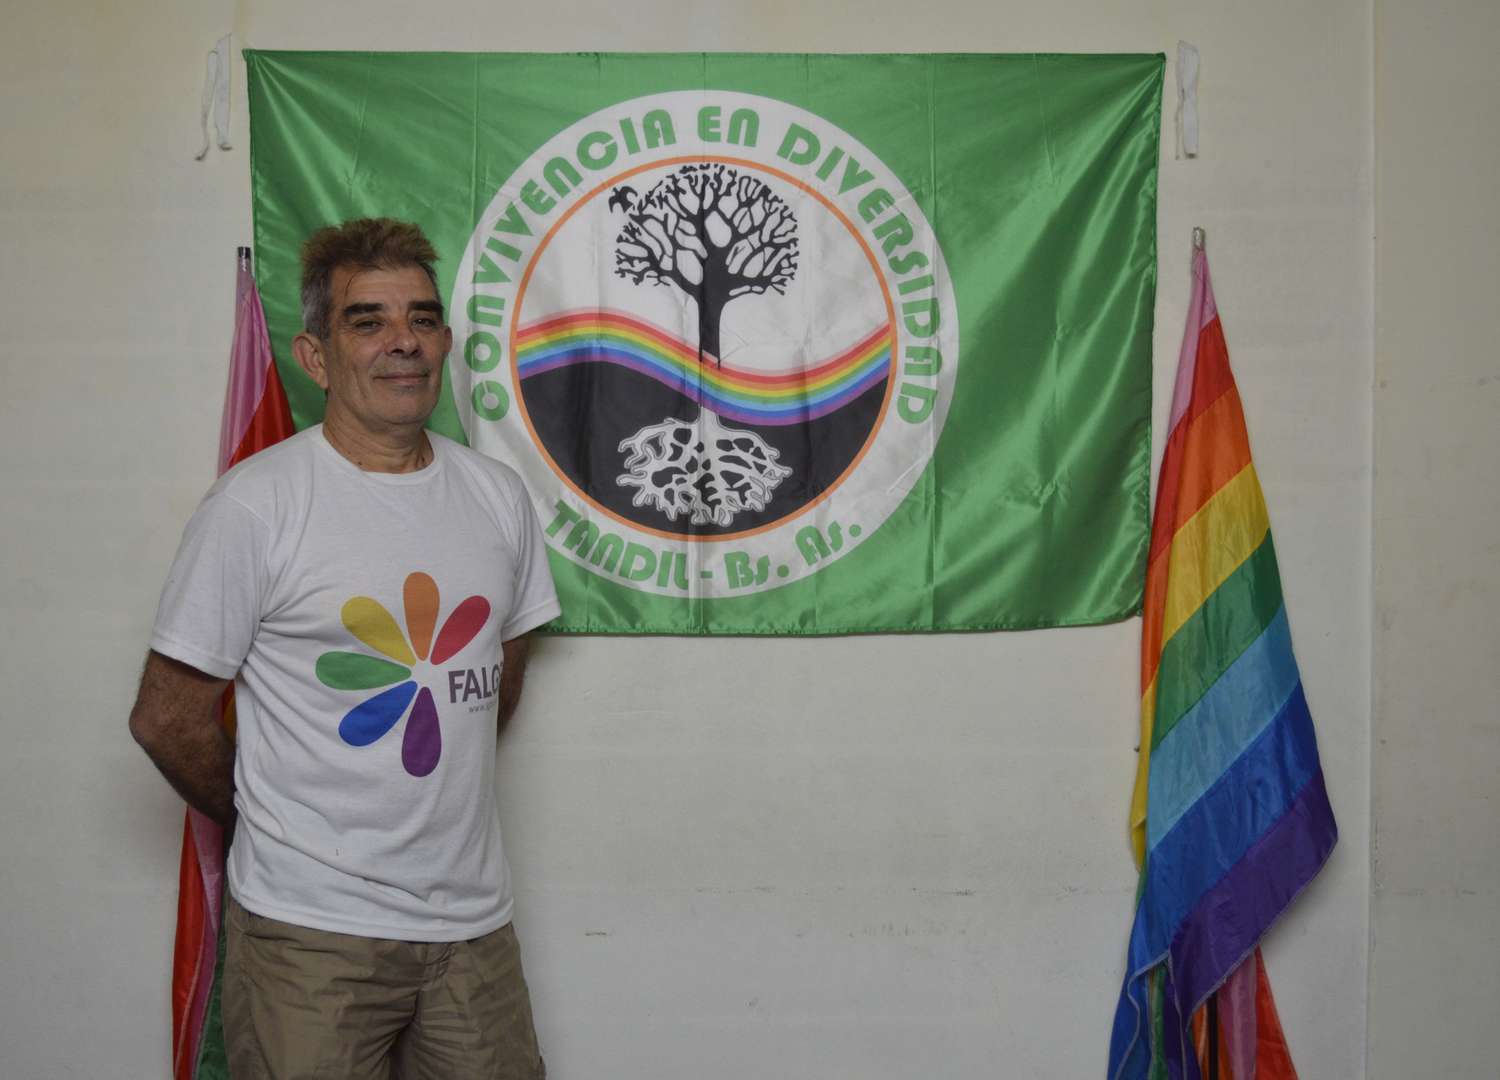 Gustavo Pernicone, experiencias y opiniones como hombre bisexual y presidente de Convivencia en Diversidad